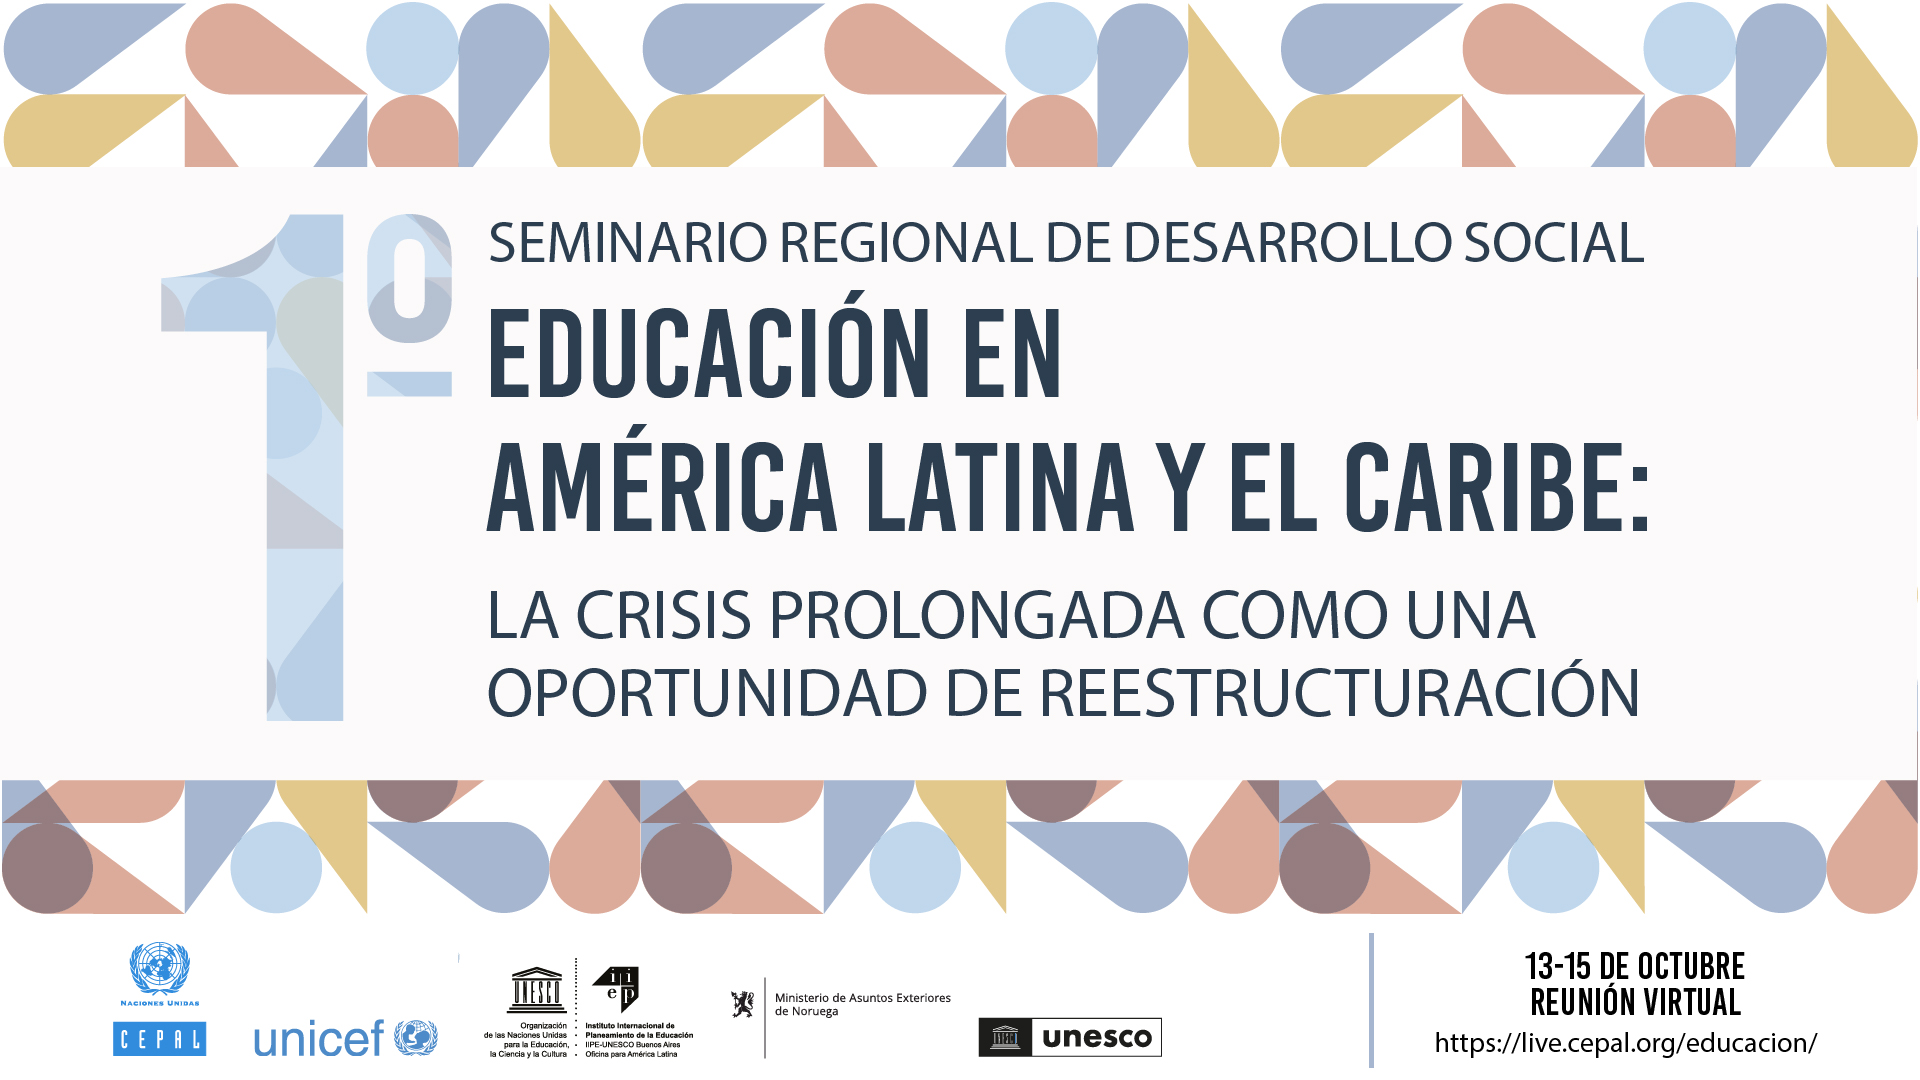 Especialistas debatirán sobre la oportunidad de reestructurar la educación en América Latina y el Caribe a partir de la crisis prolongada del COVID-19